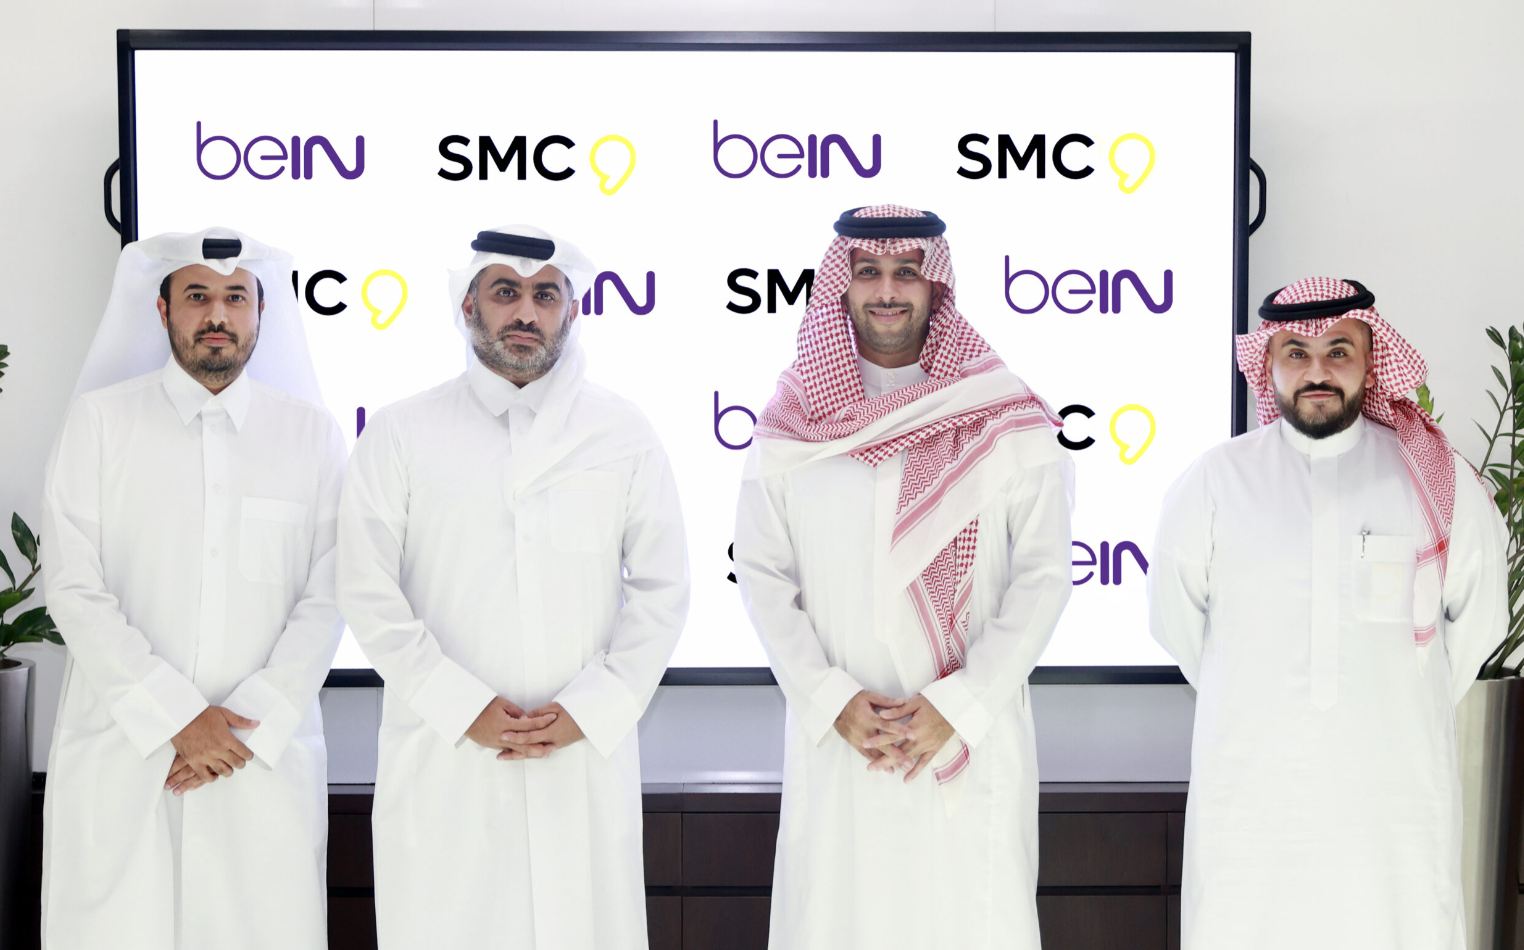 السلام في عصرنا: توقع beIN القطرية صفقة حصرية لبيع الإعلانات مع SMC السعودية